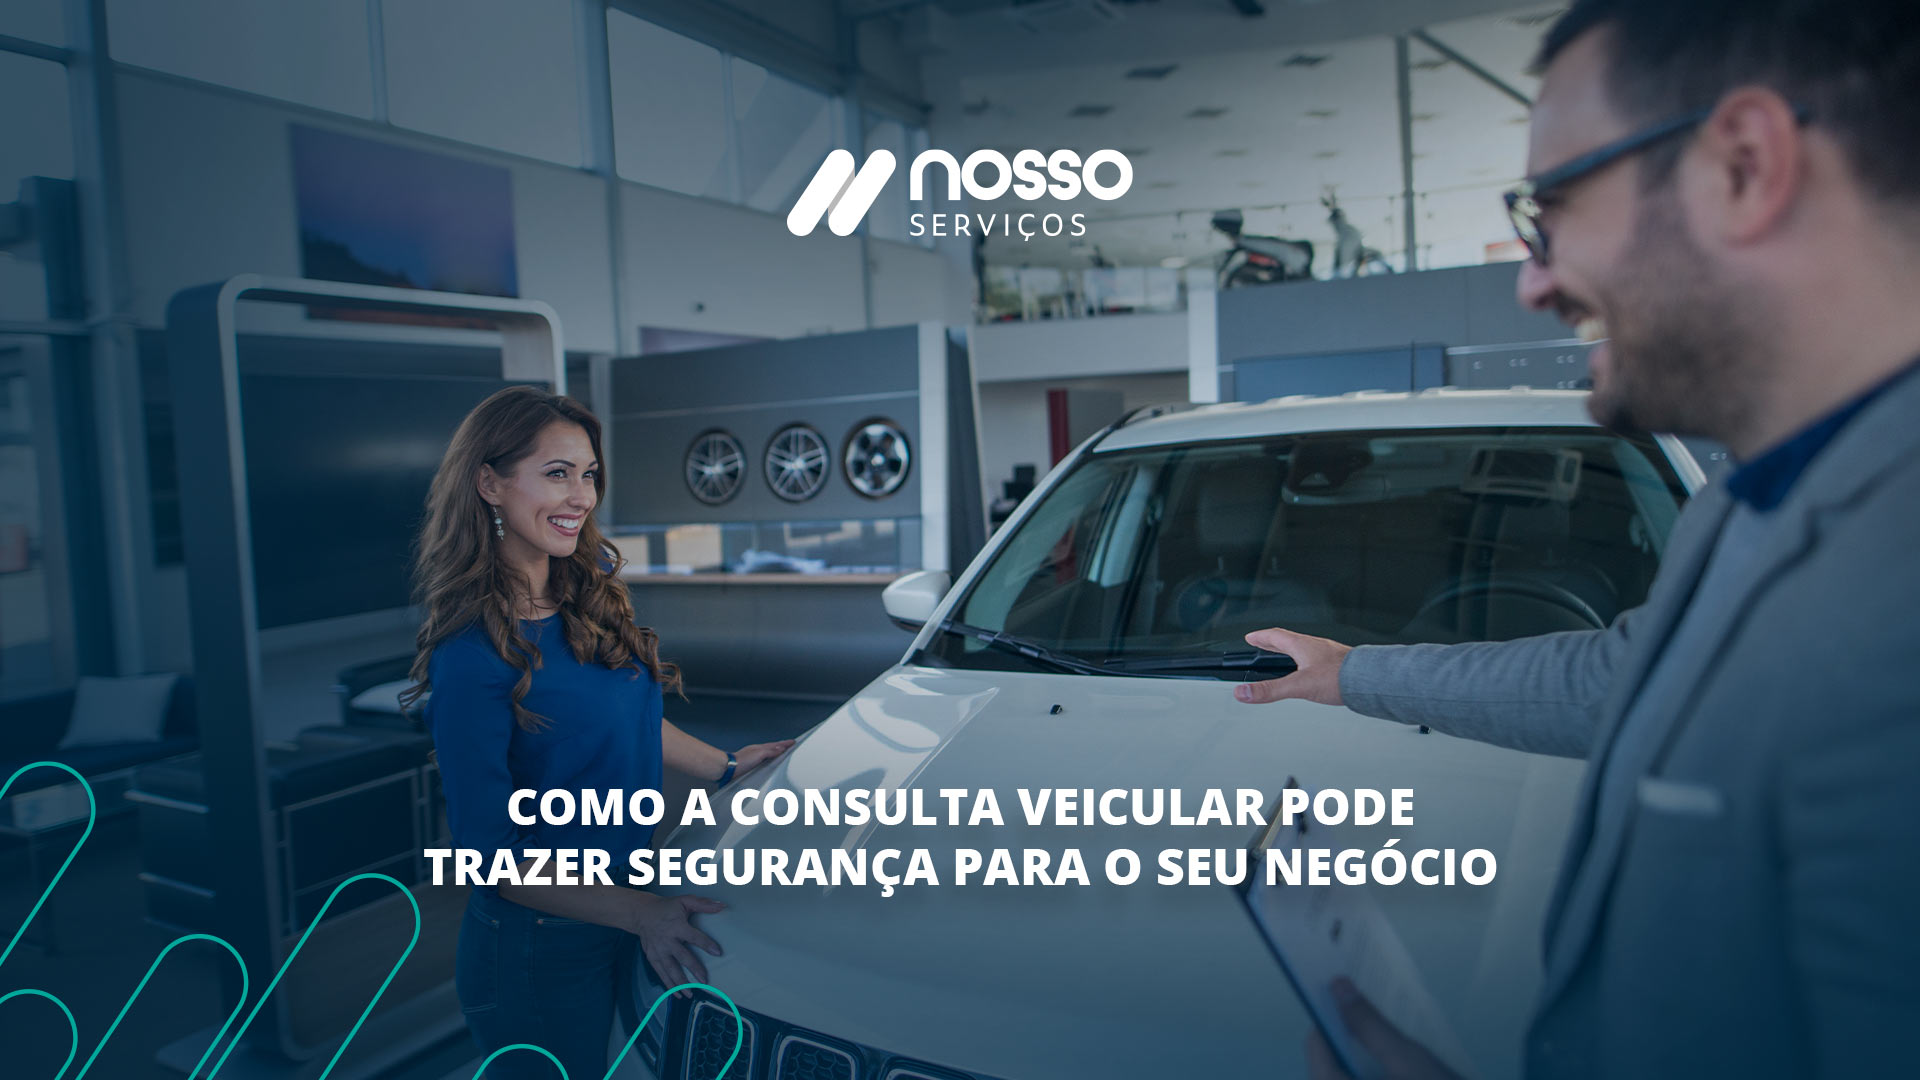 Banner de uma imagem de um consultor apresentando um carro para uma mulher. À frente da imagem, aparece a frase: "Como a Consulta Veicular pode trazer segurança para o seu negócio".